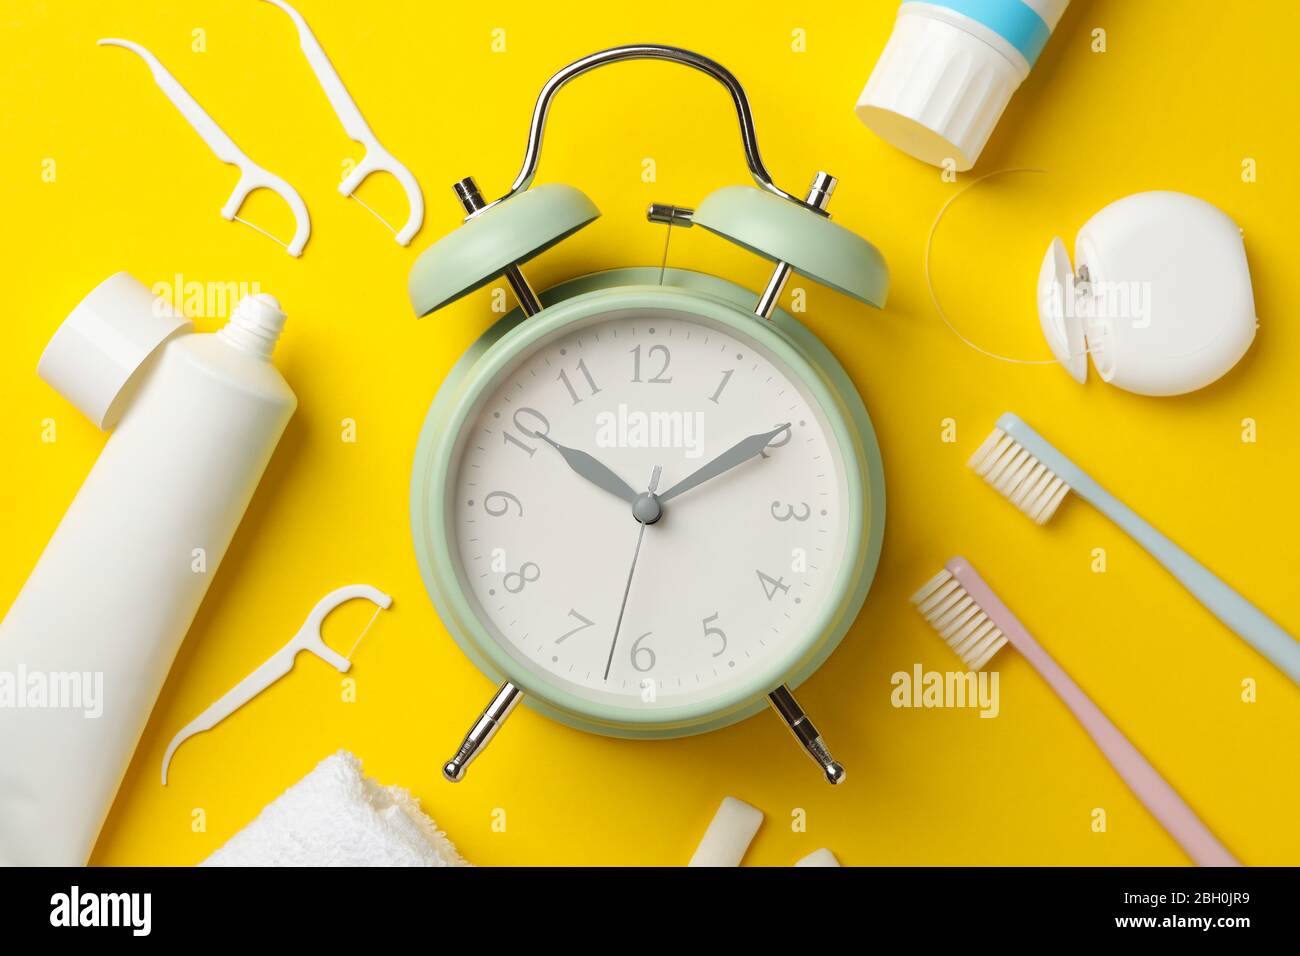 Sveglia e strumenti per la cura dentale su sfondo giallo, vista dall'alto Foto Stock